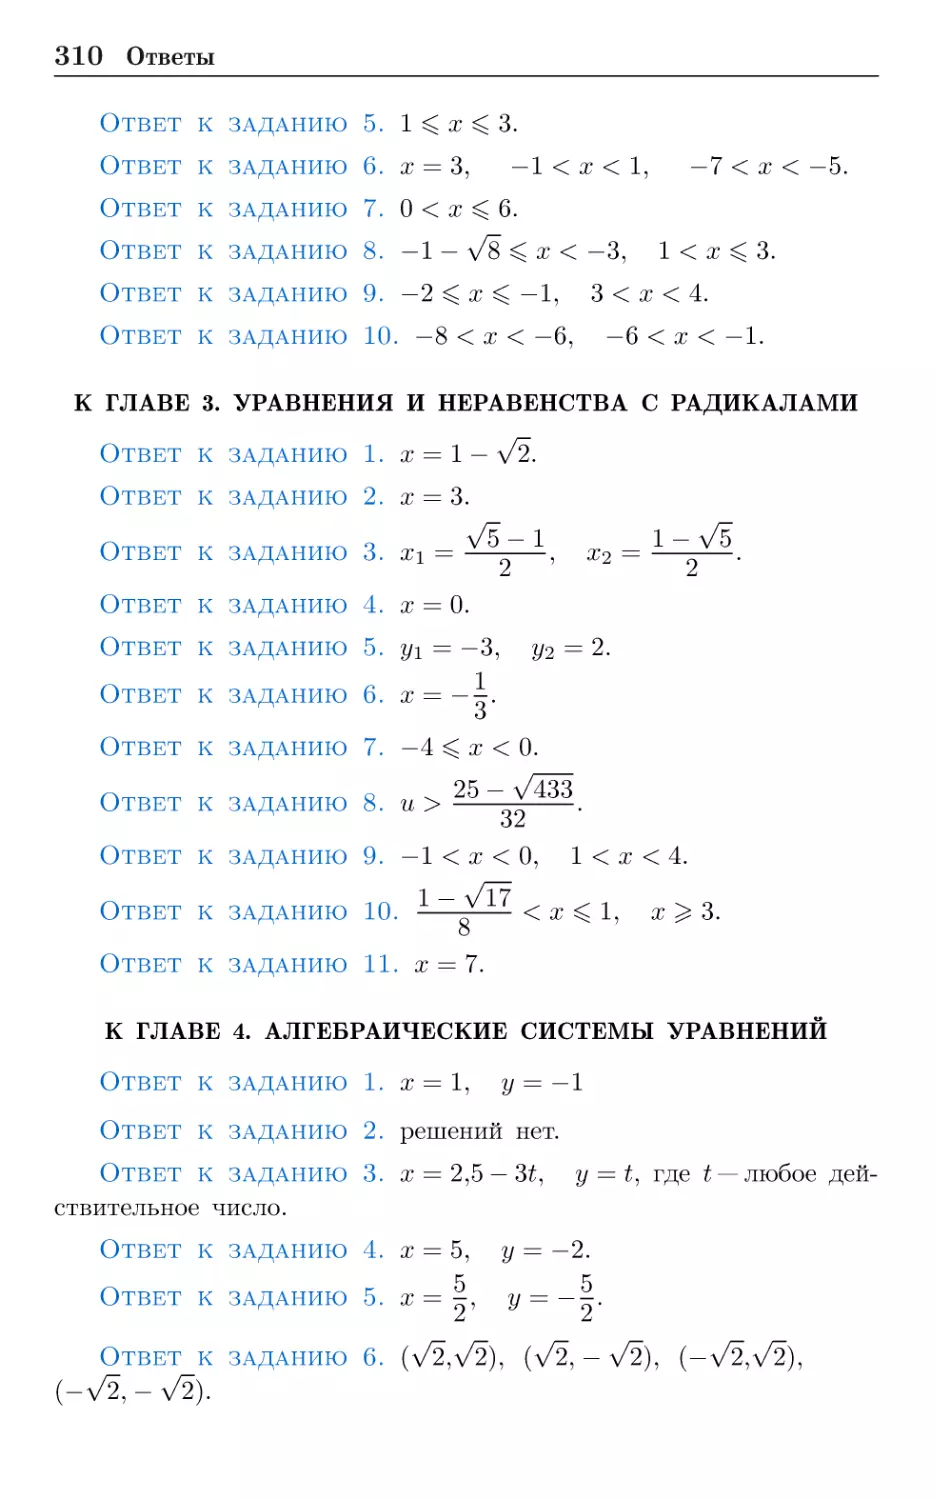 К главе 3. Уравнения и неравенства с радикалами
К главе 4. Алгебраические системы уравнений